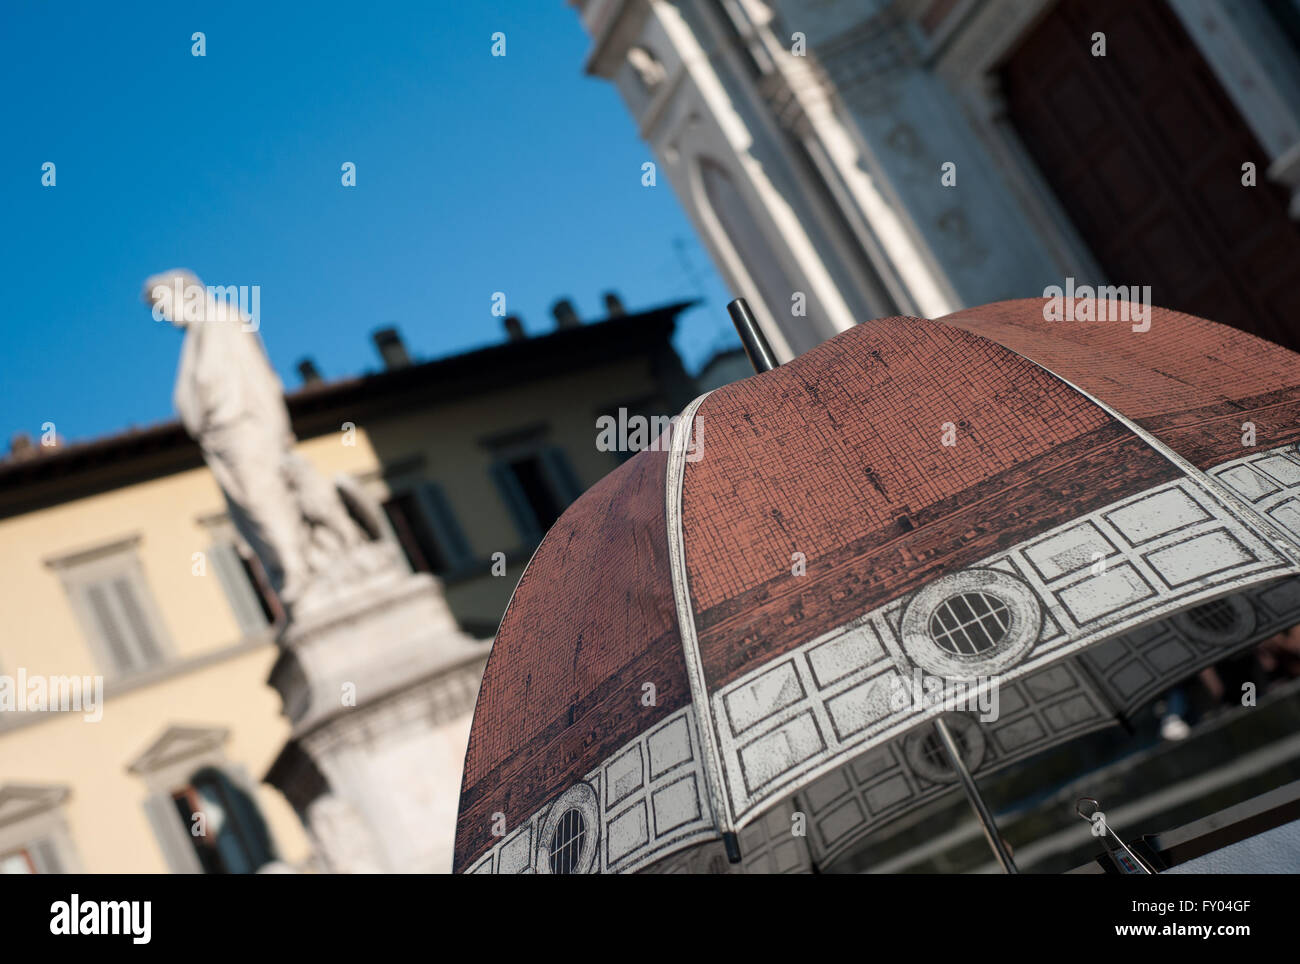 Im freien Blick auf die berühmte Statue von Dante Alighieri in Piazza Santa Croce, Florenz gestellt. Italien. Stockfoto